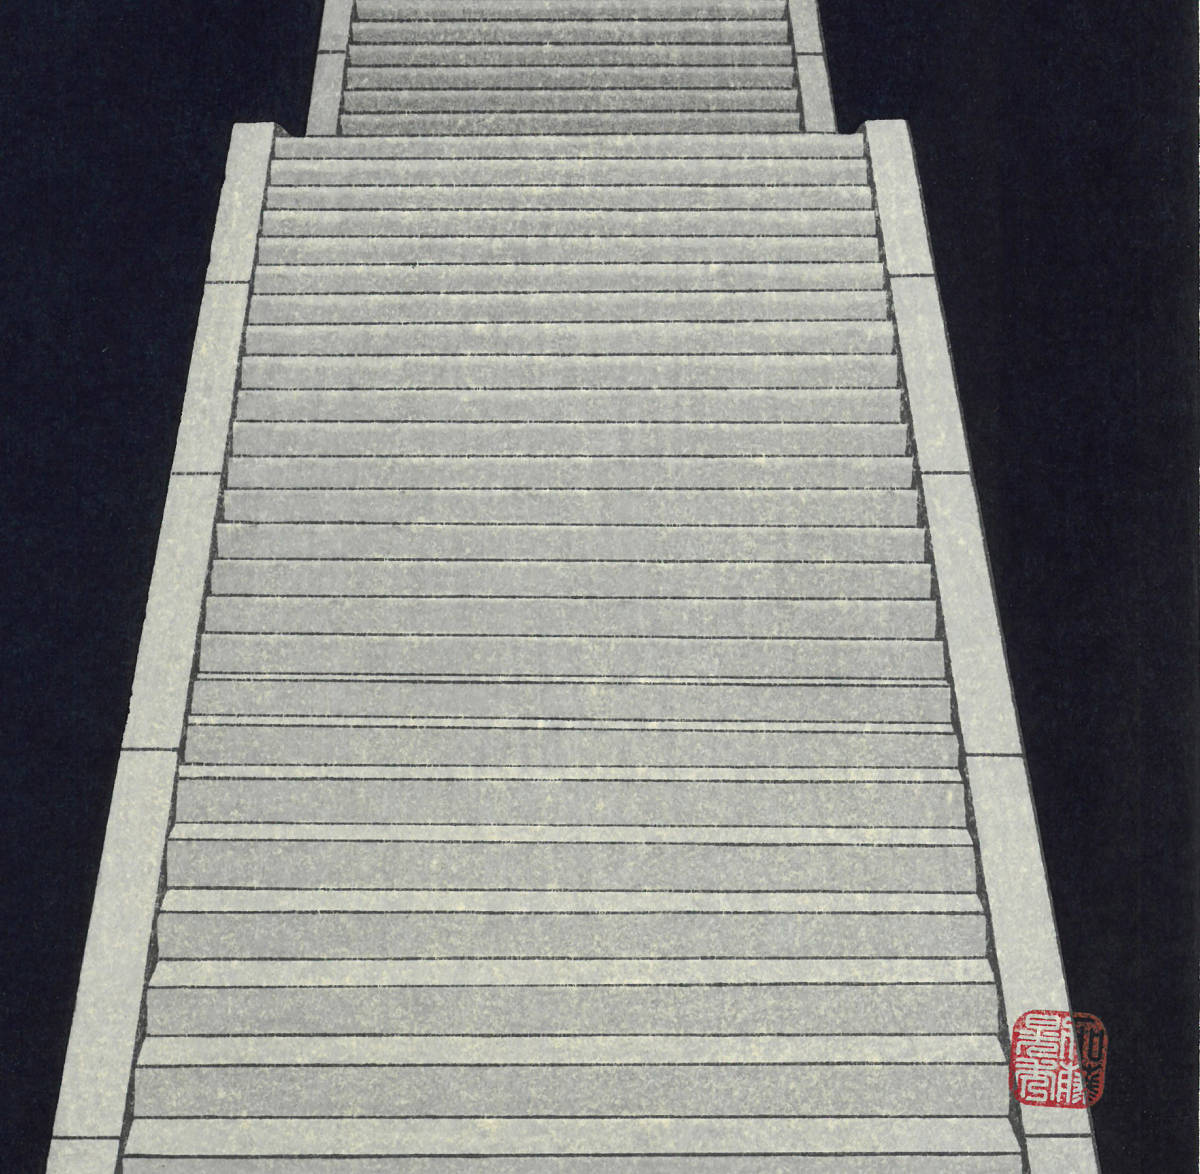 加藤晃秀 (Kato Teruhide)　木版画 　No.007 仲秋　　初版1989～　ポストモダンの香り漂う_画像10